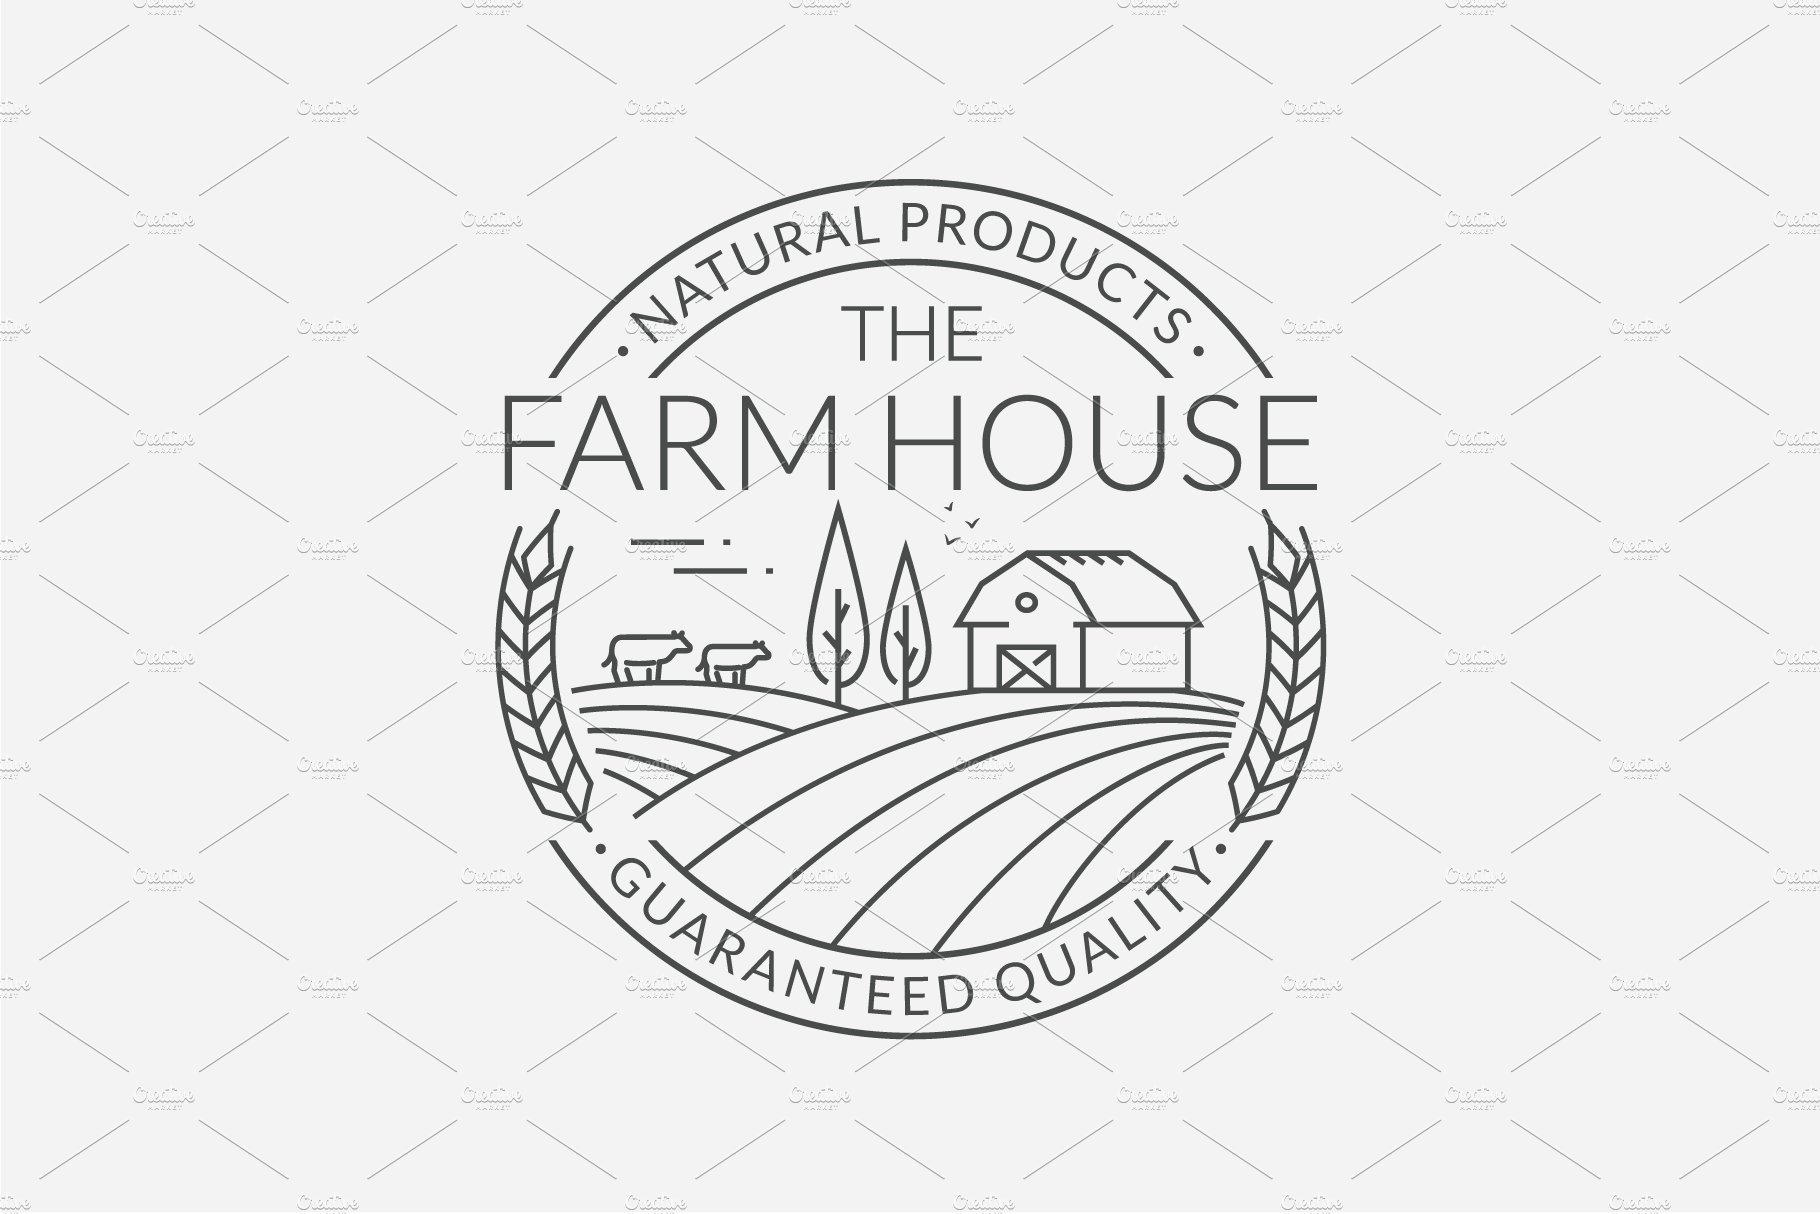 Black farm icons for logo.